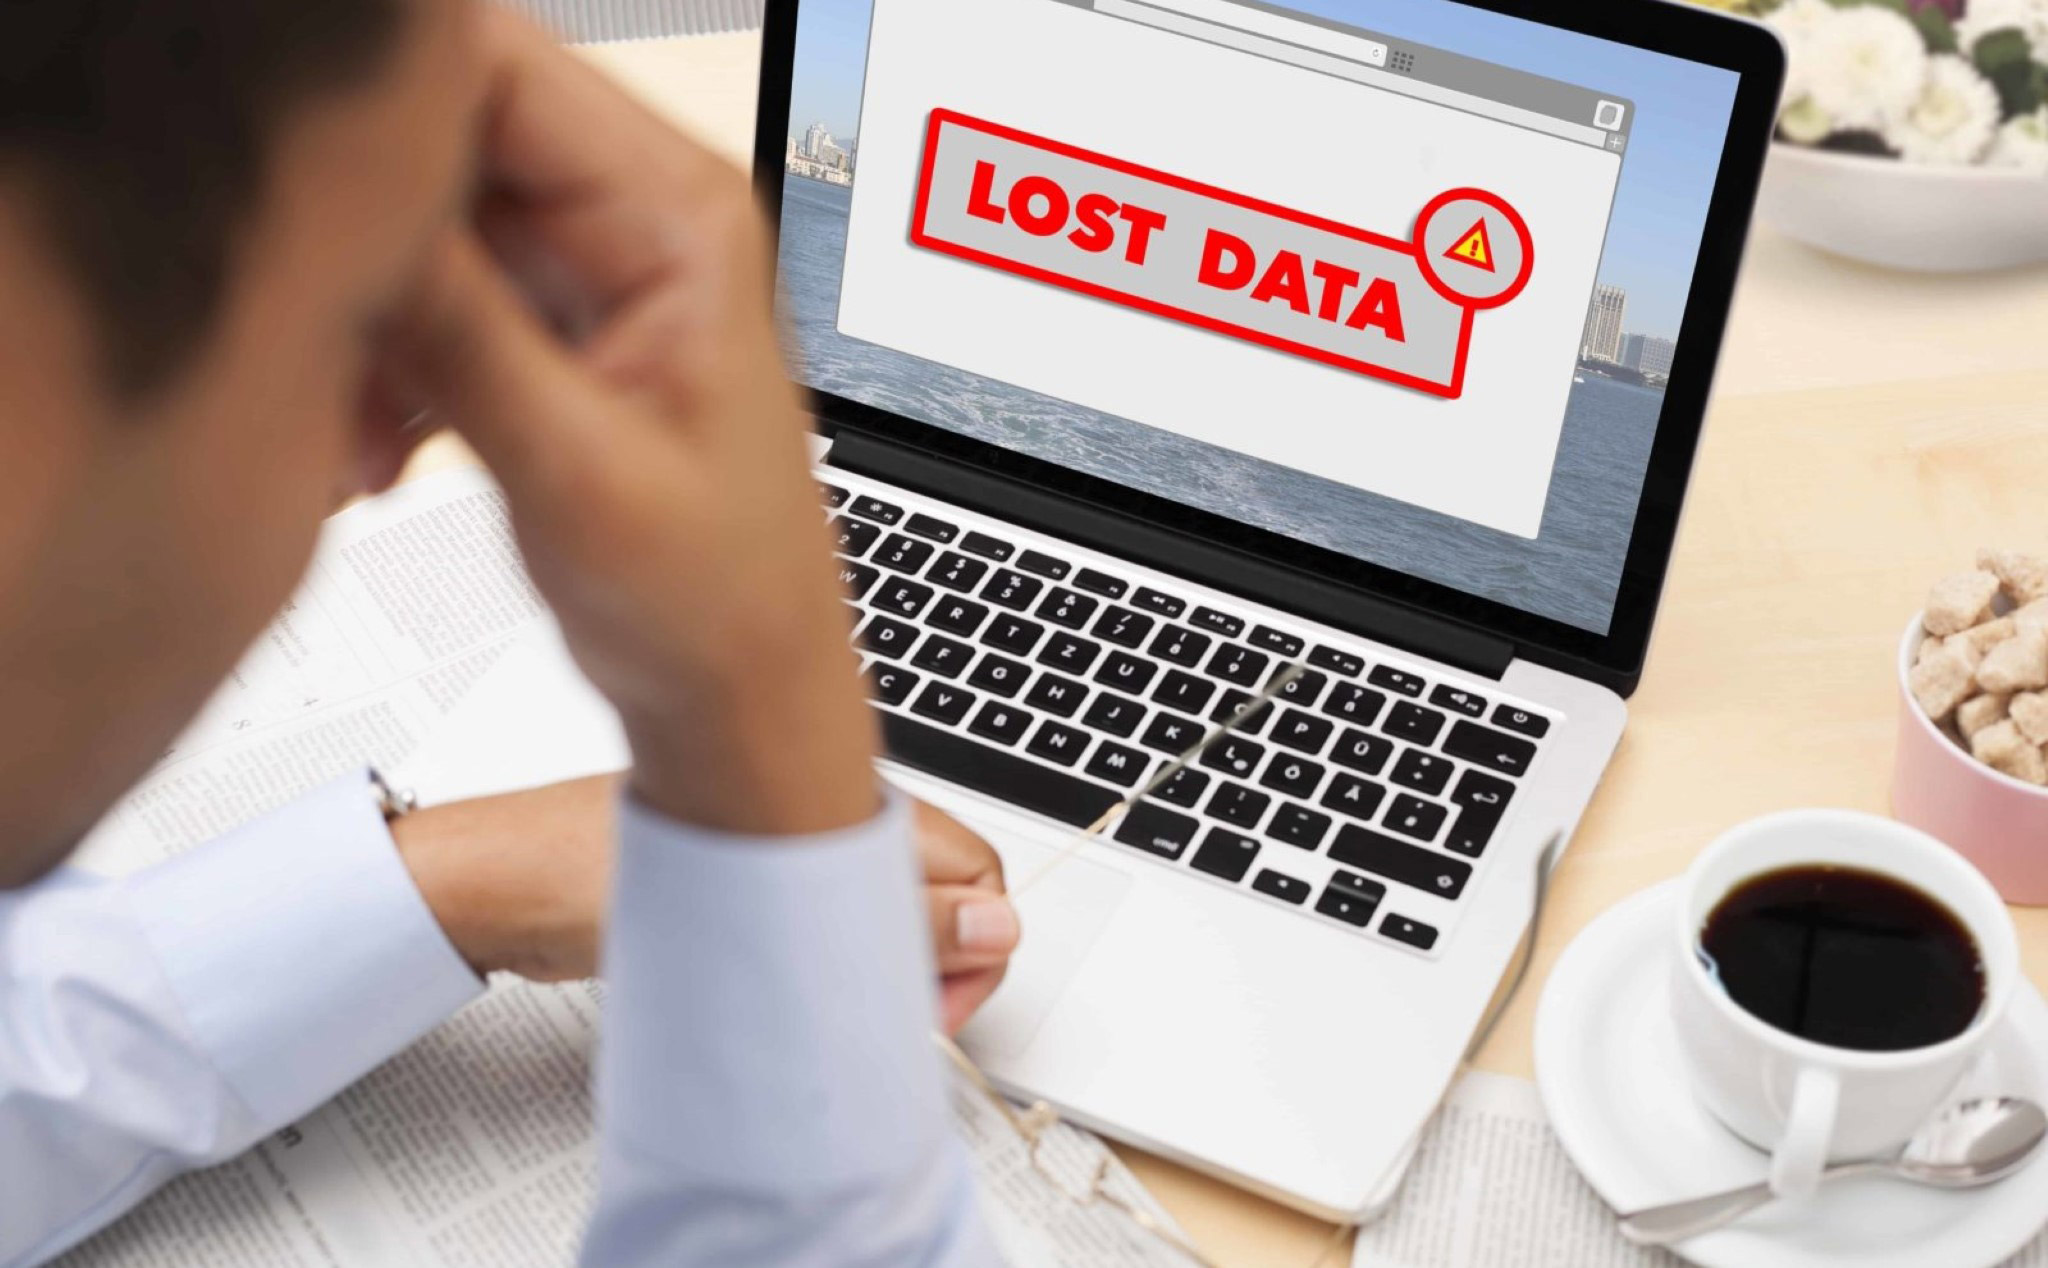 Nếu không muốn mất toàn bộ dữ liệu khi bị khóa tài khoản thì làm như thế nào?